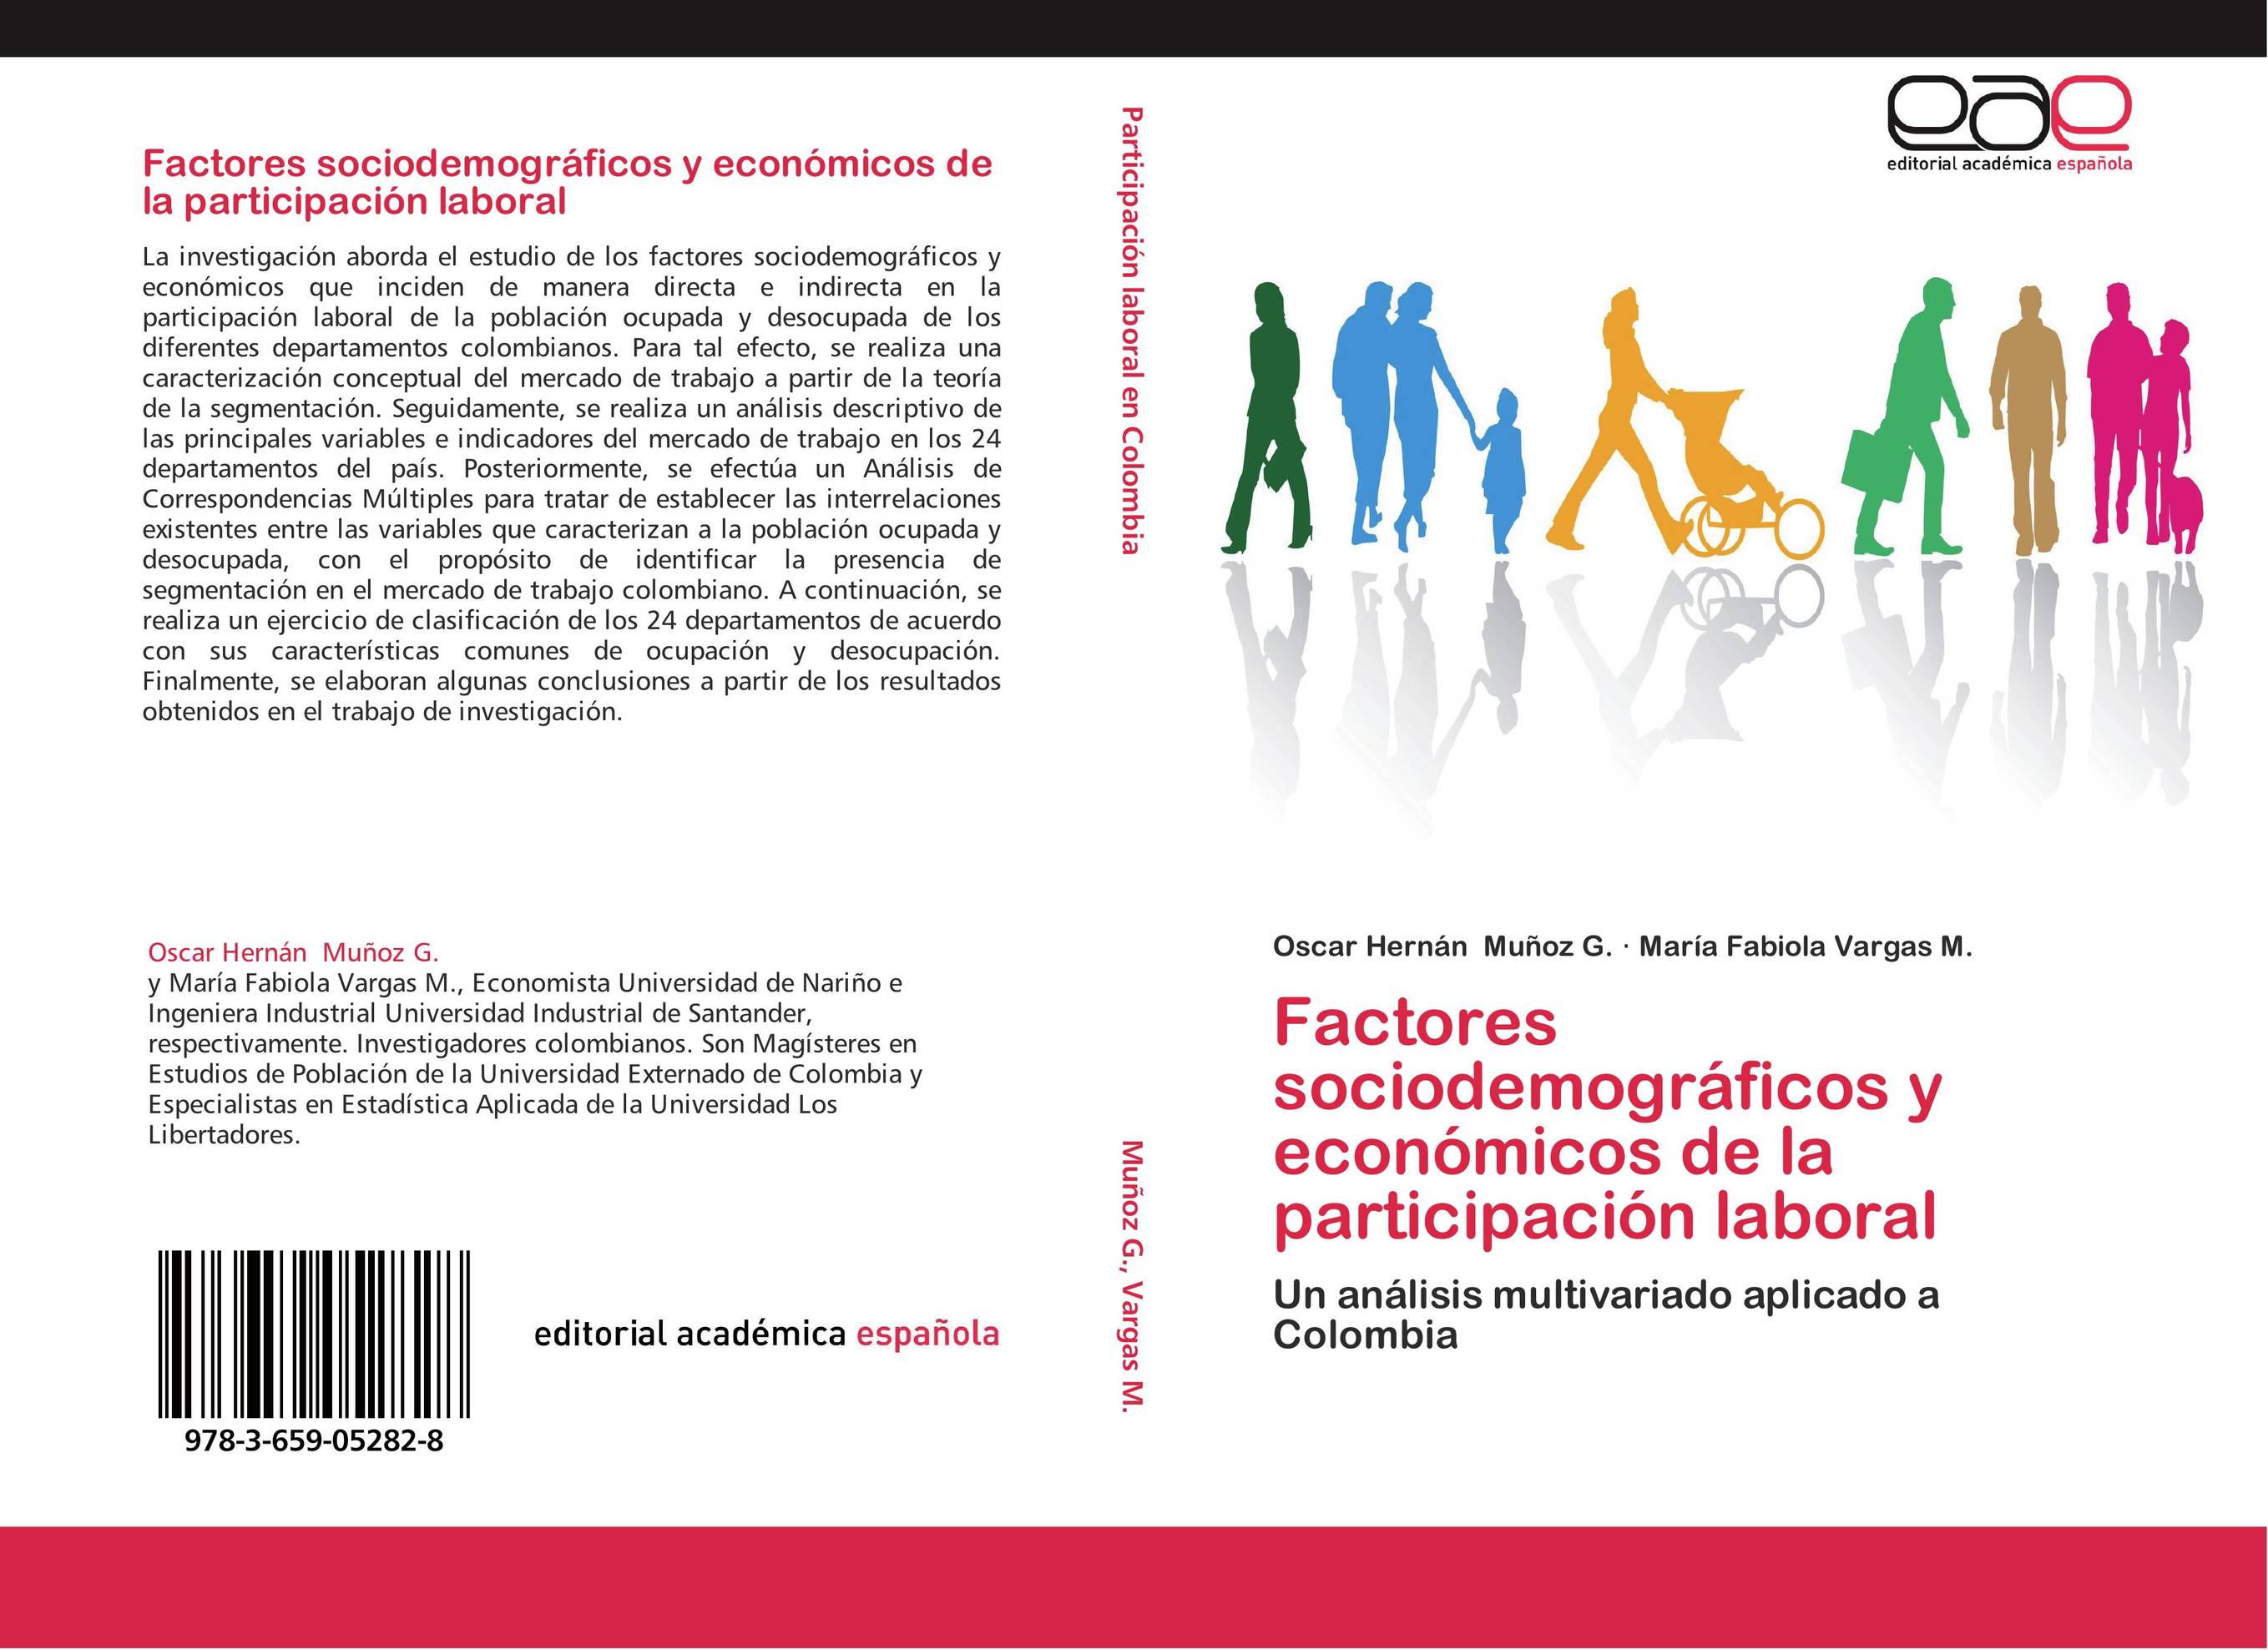 Factores sociodemográficos y económicos de la participación laboral